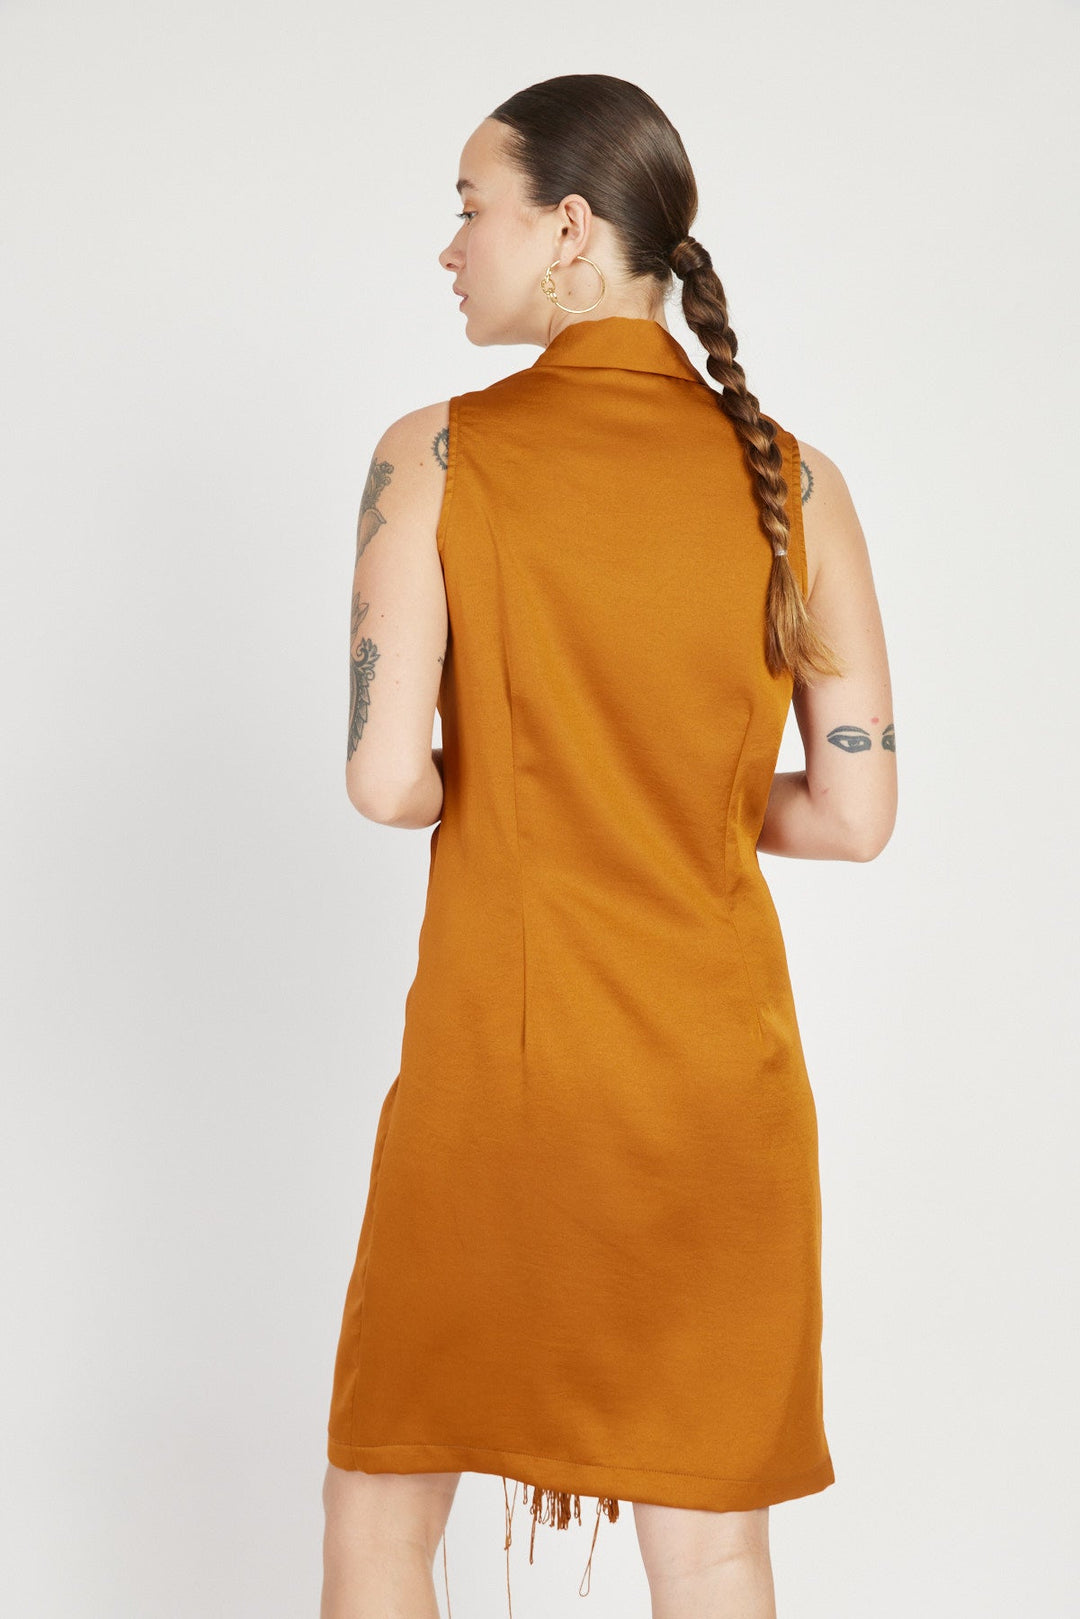 שמלת צעיף מיני בצבע חמרה - House Of Jaffa X Razili